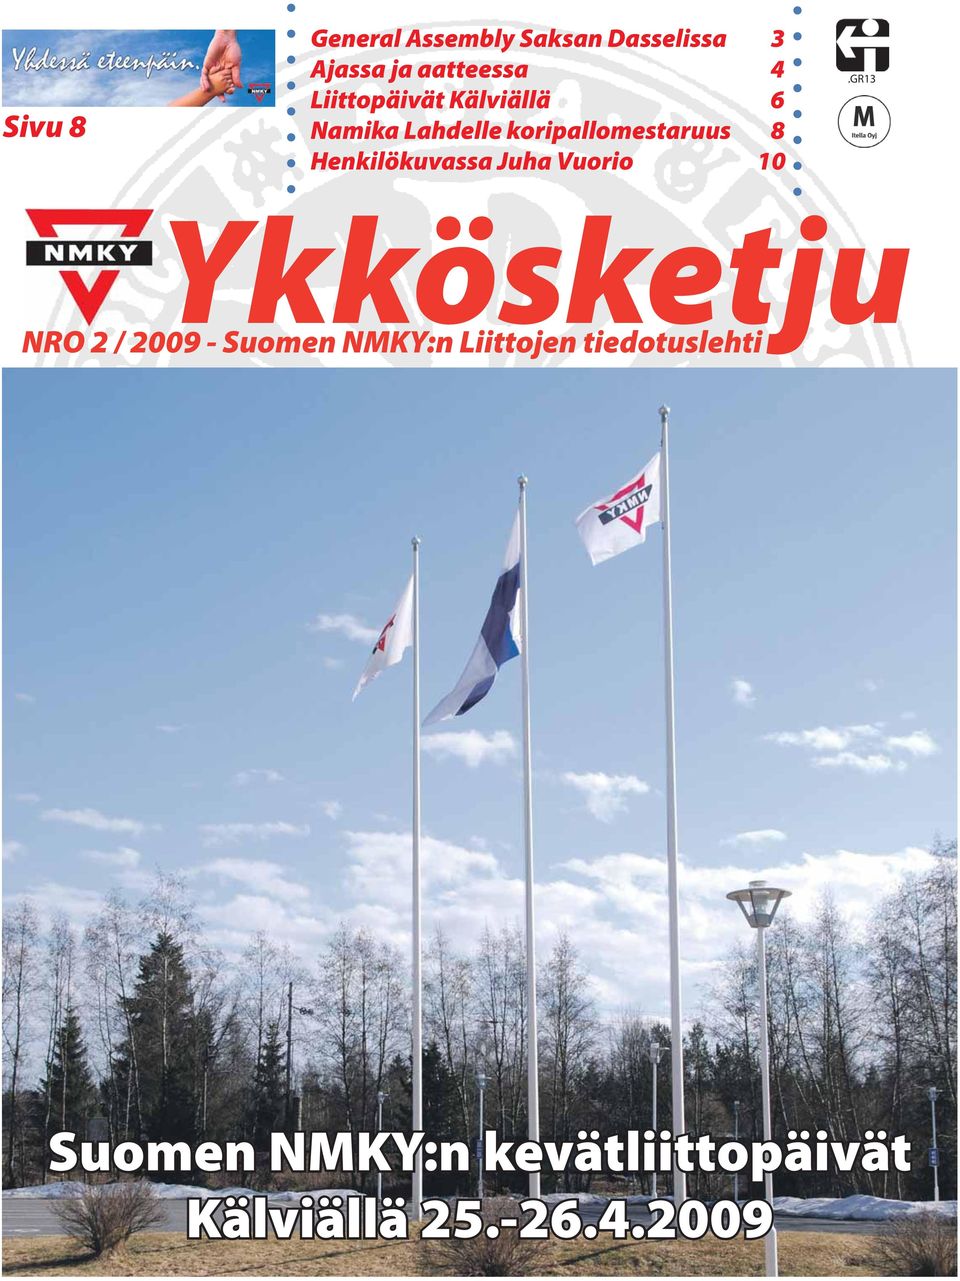 Henkilökuvassa Juha Vuorio 10 Ykkösketju NRO 2 / 2009 - Suomen NMKY:n